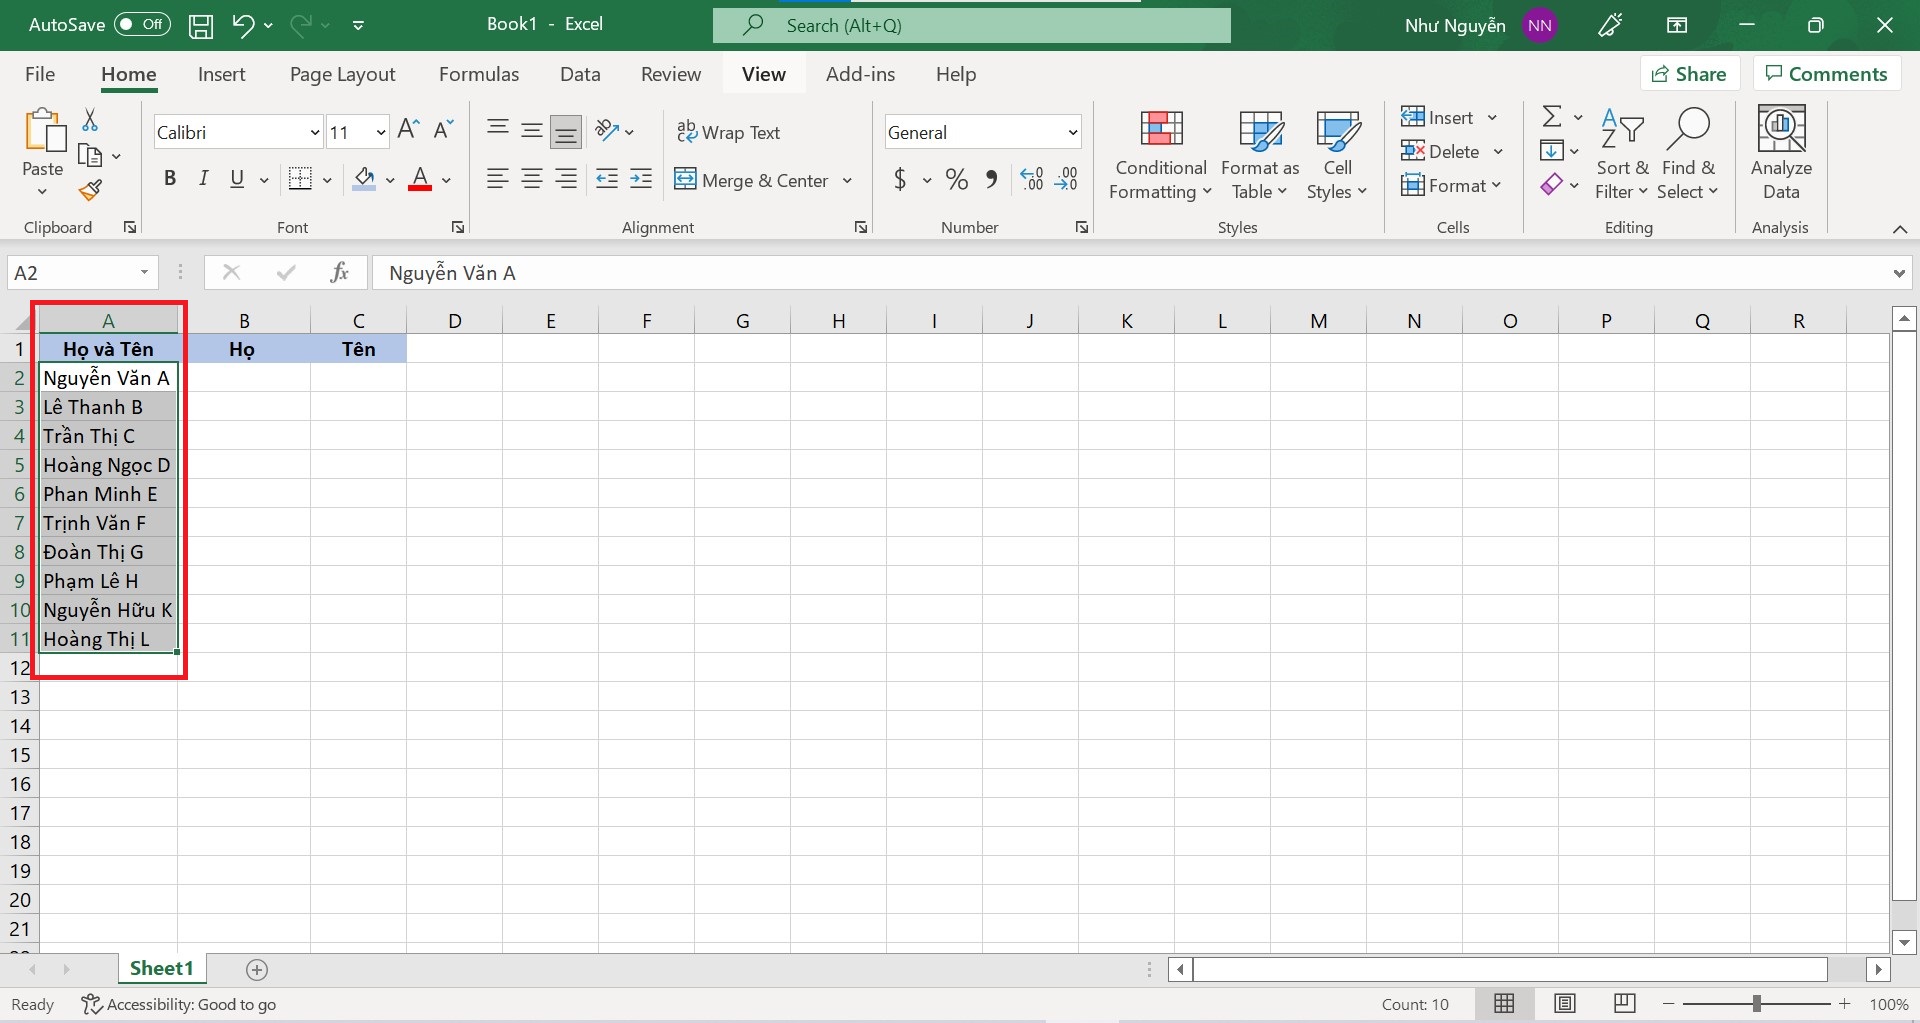 Cách tách tên trong Excel bằng công cụ Text to Columns - bước 1